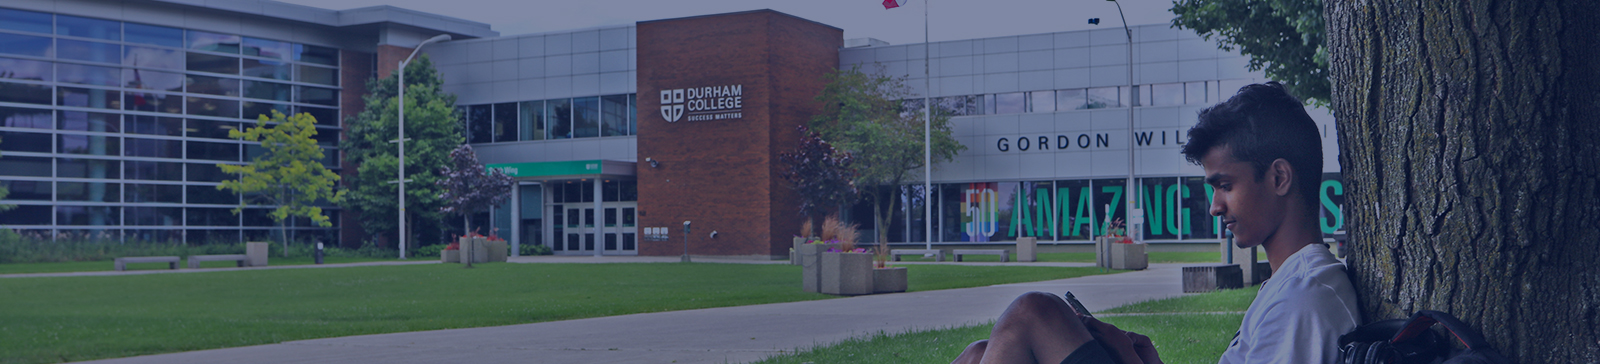 Image of Durham College